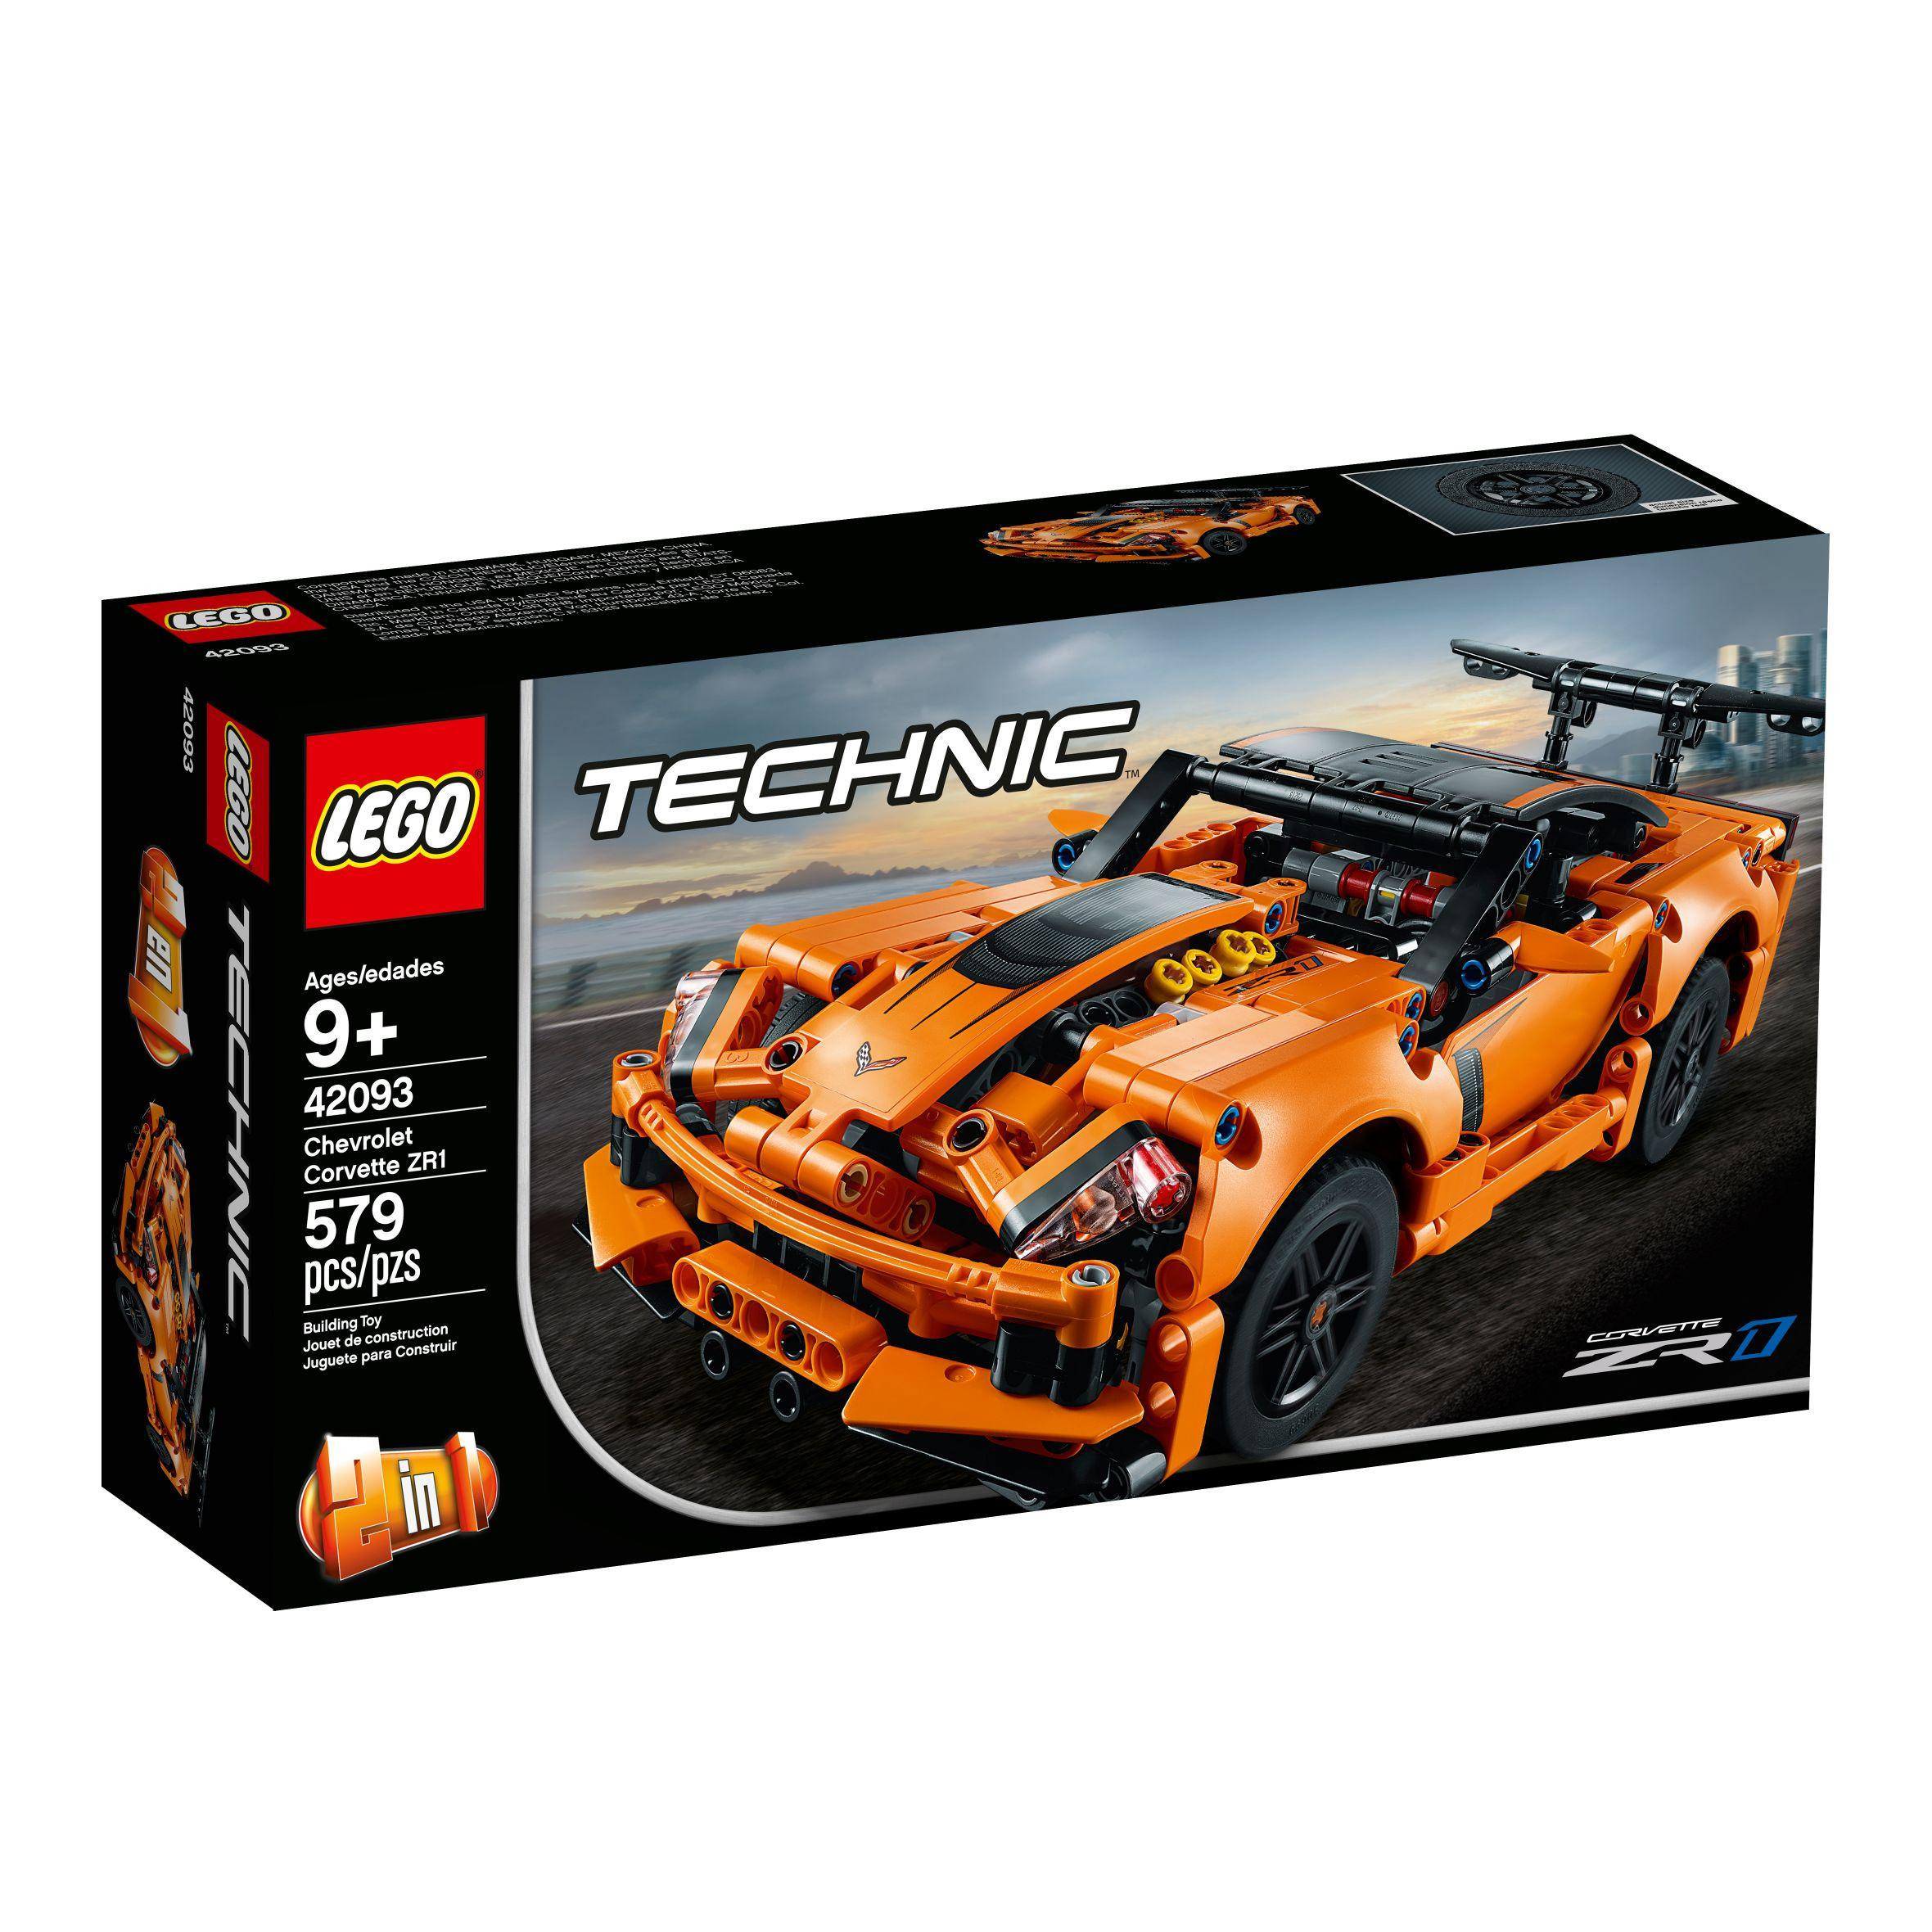 Lego Technic 42093 Chevrolet Corvette Zr1 Age 9 Building Blocks 579pcs